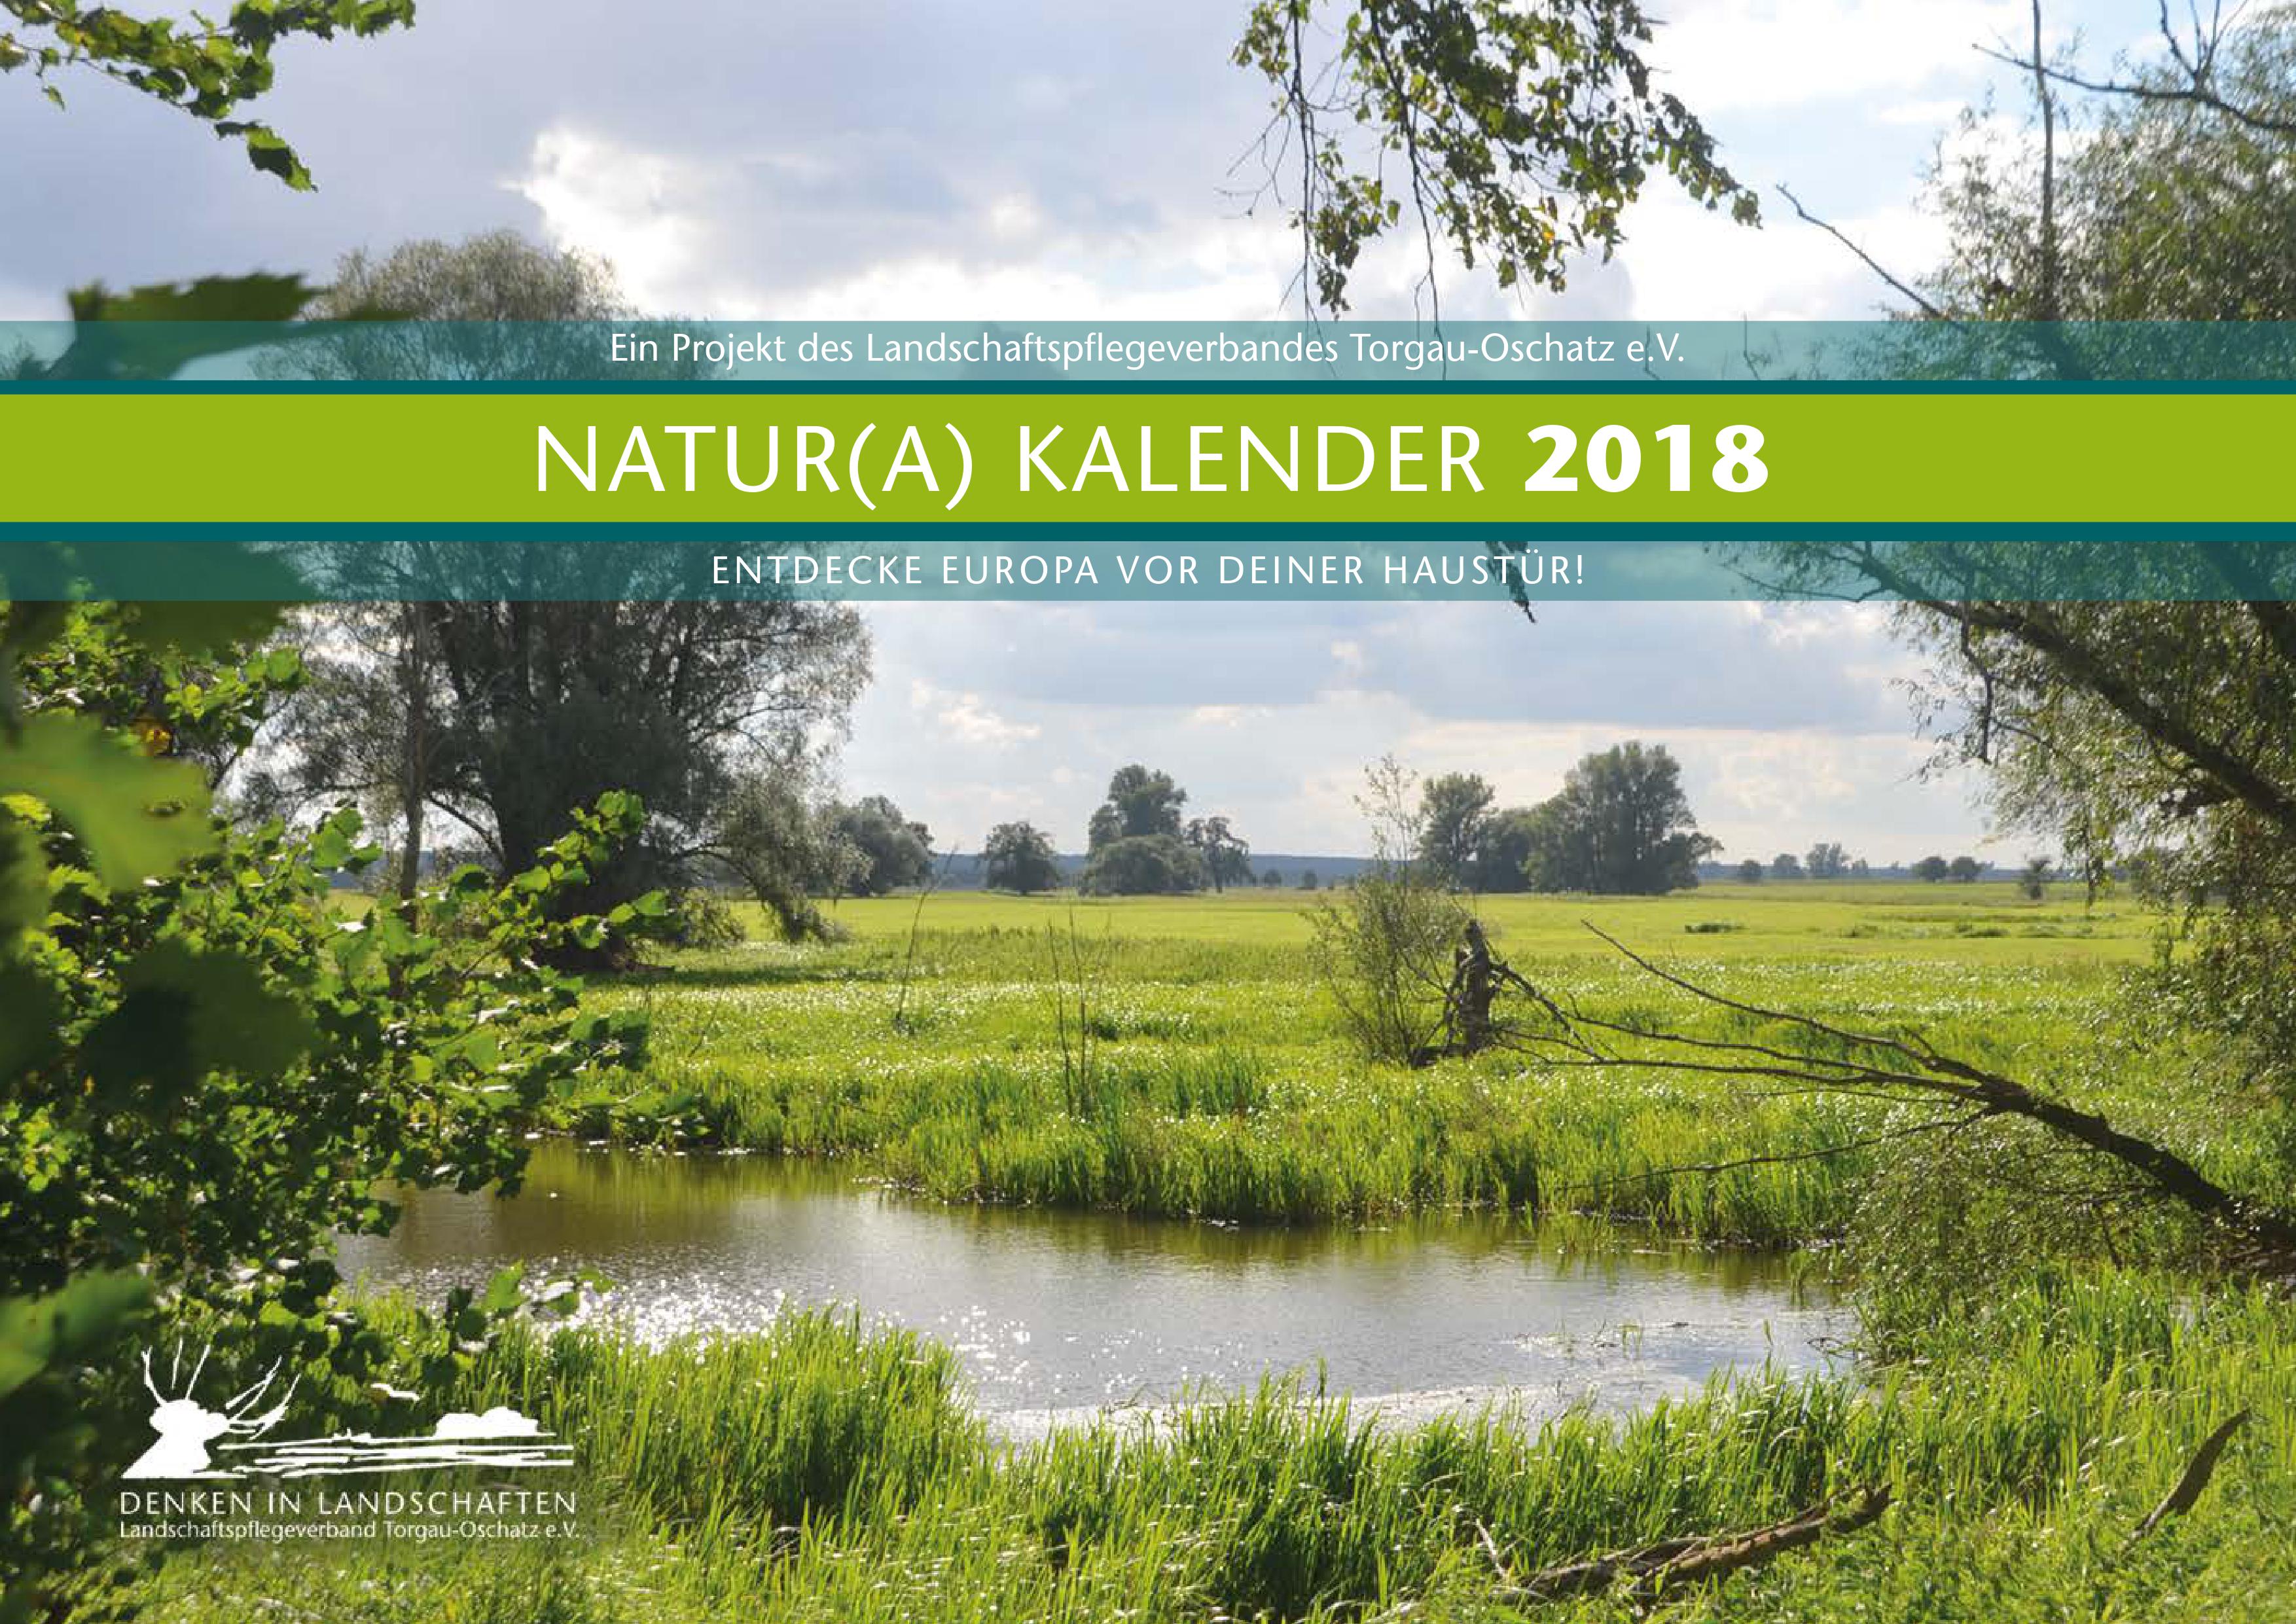 Natur(a) Kalender 2018